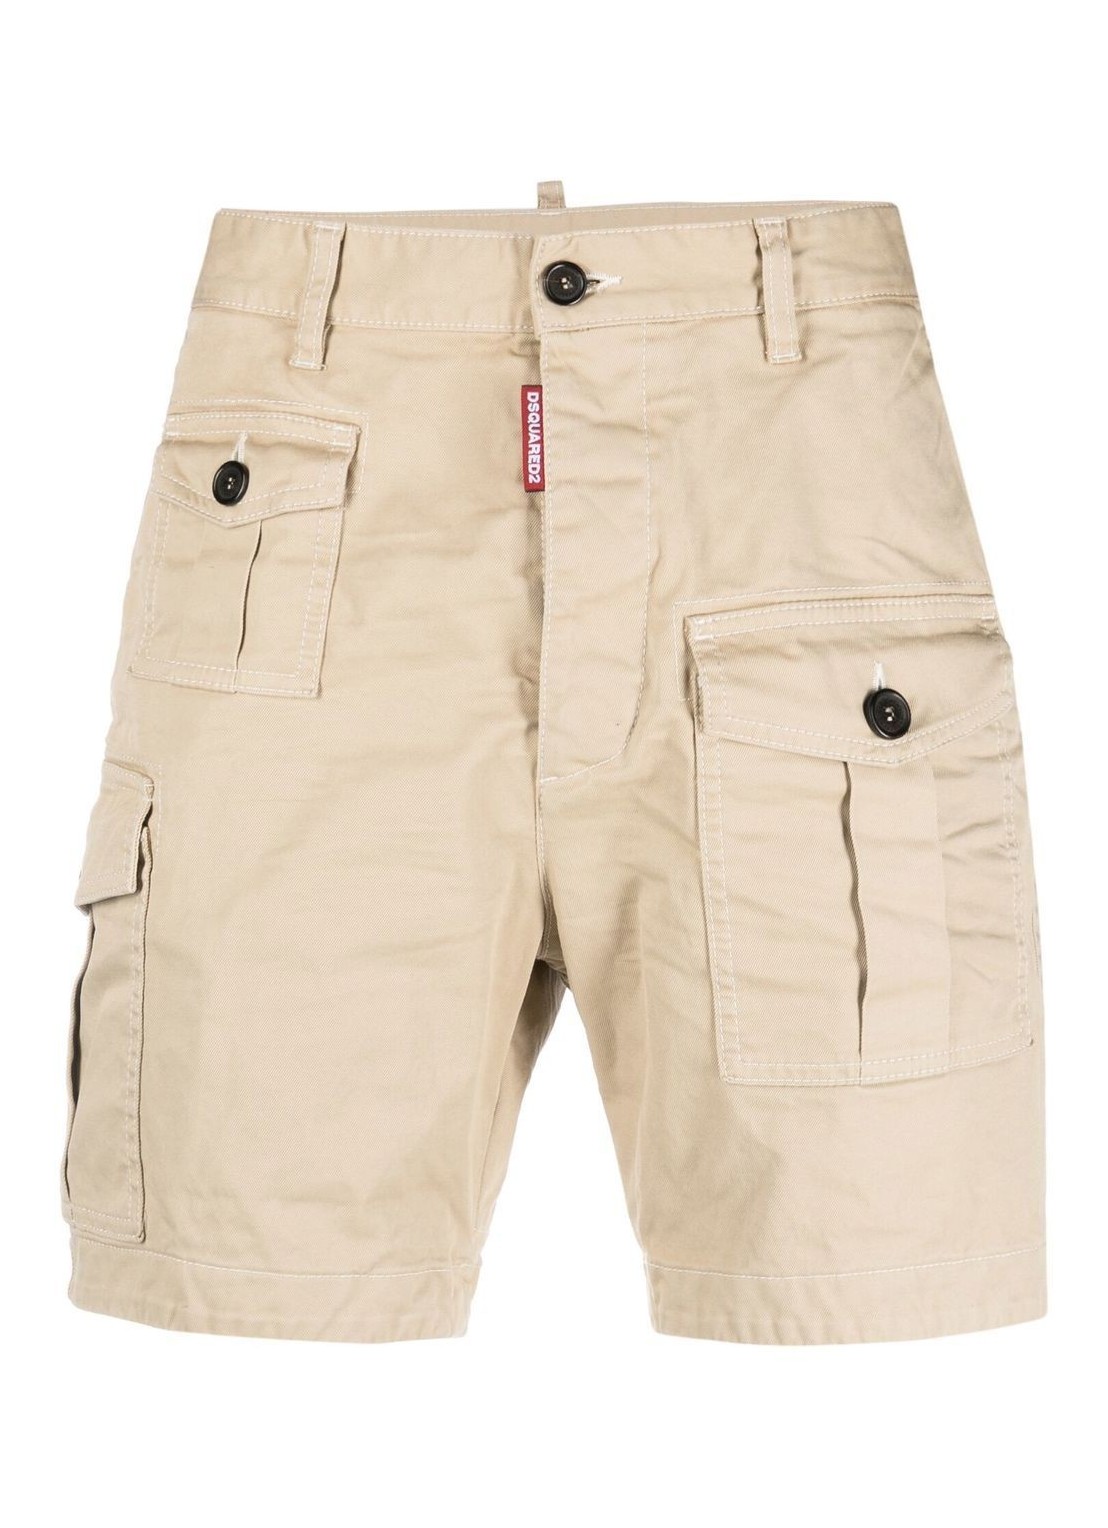 Pantalon corto dsquared sexy cargo shorts - s74mu0780s39021 111 talla 48
 